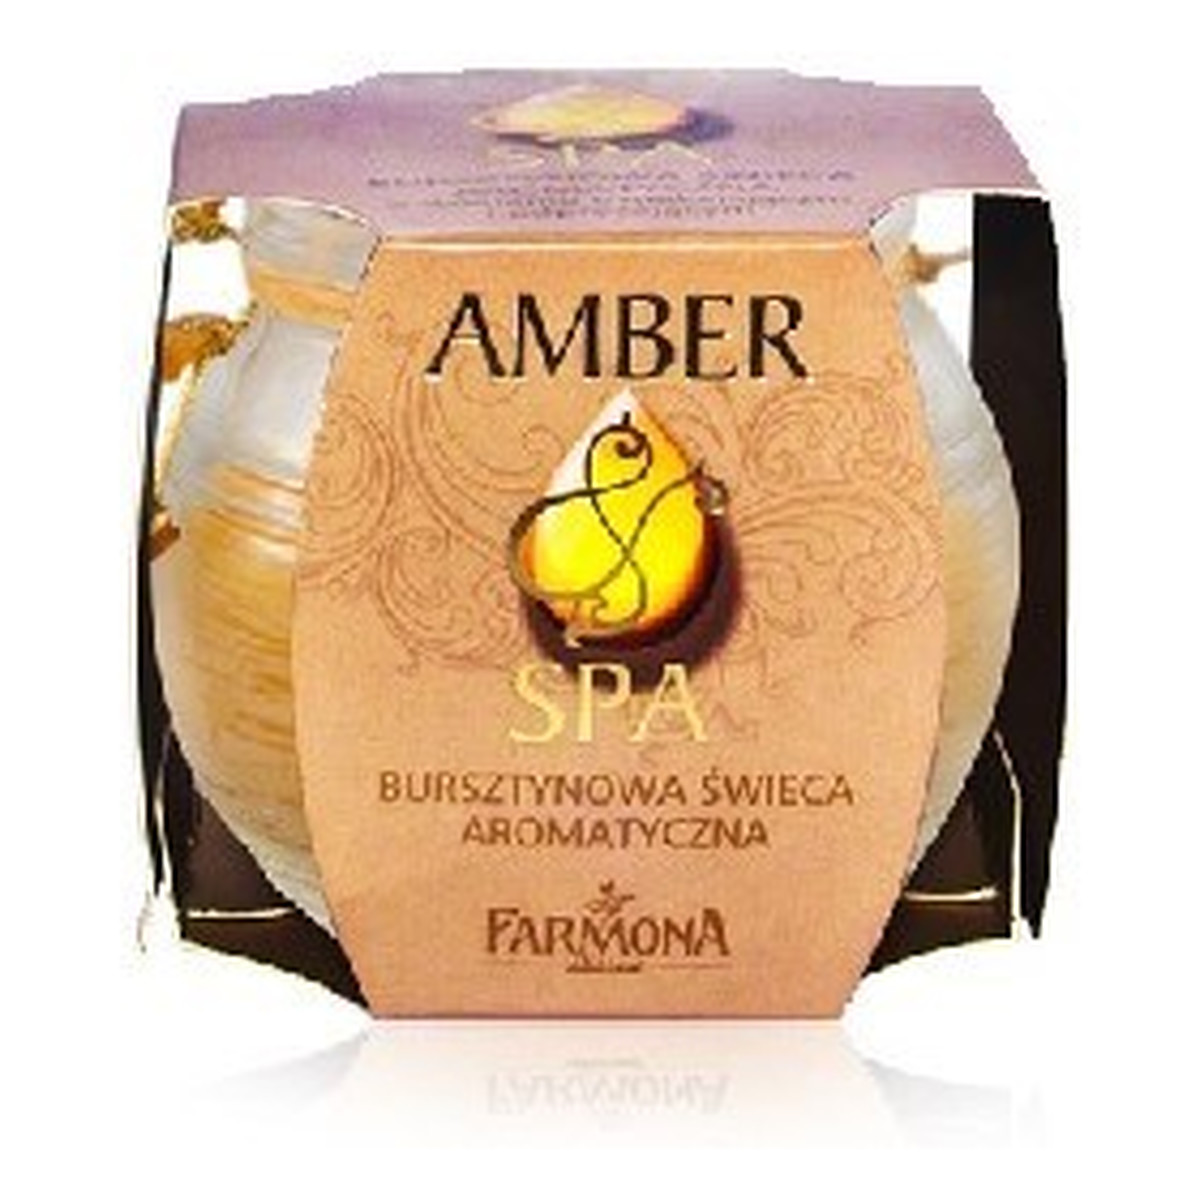 Farmona Amber Spa Świeca zapachowa bursztynowa 1szt